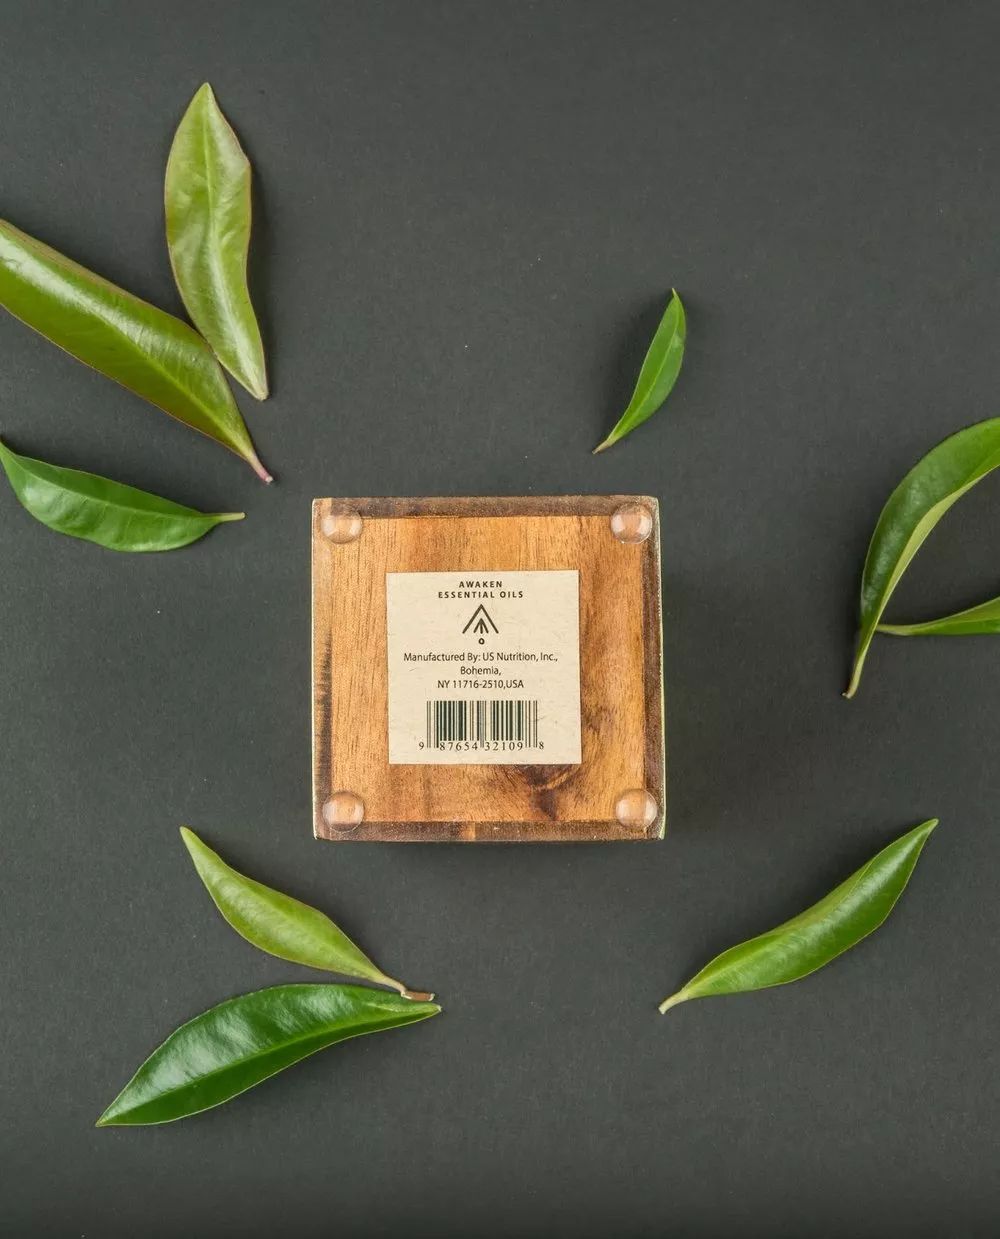 天然环保的普洱茶存盒-以优质棕榈叶打造的独特包装设计